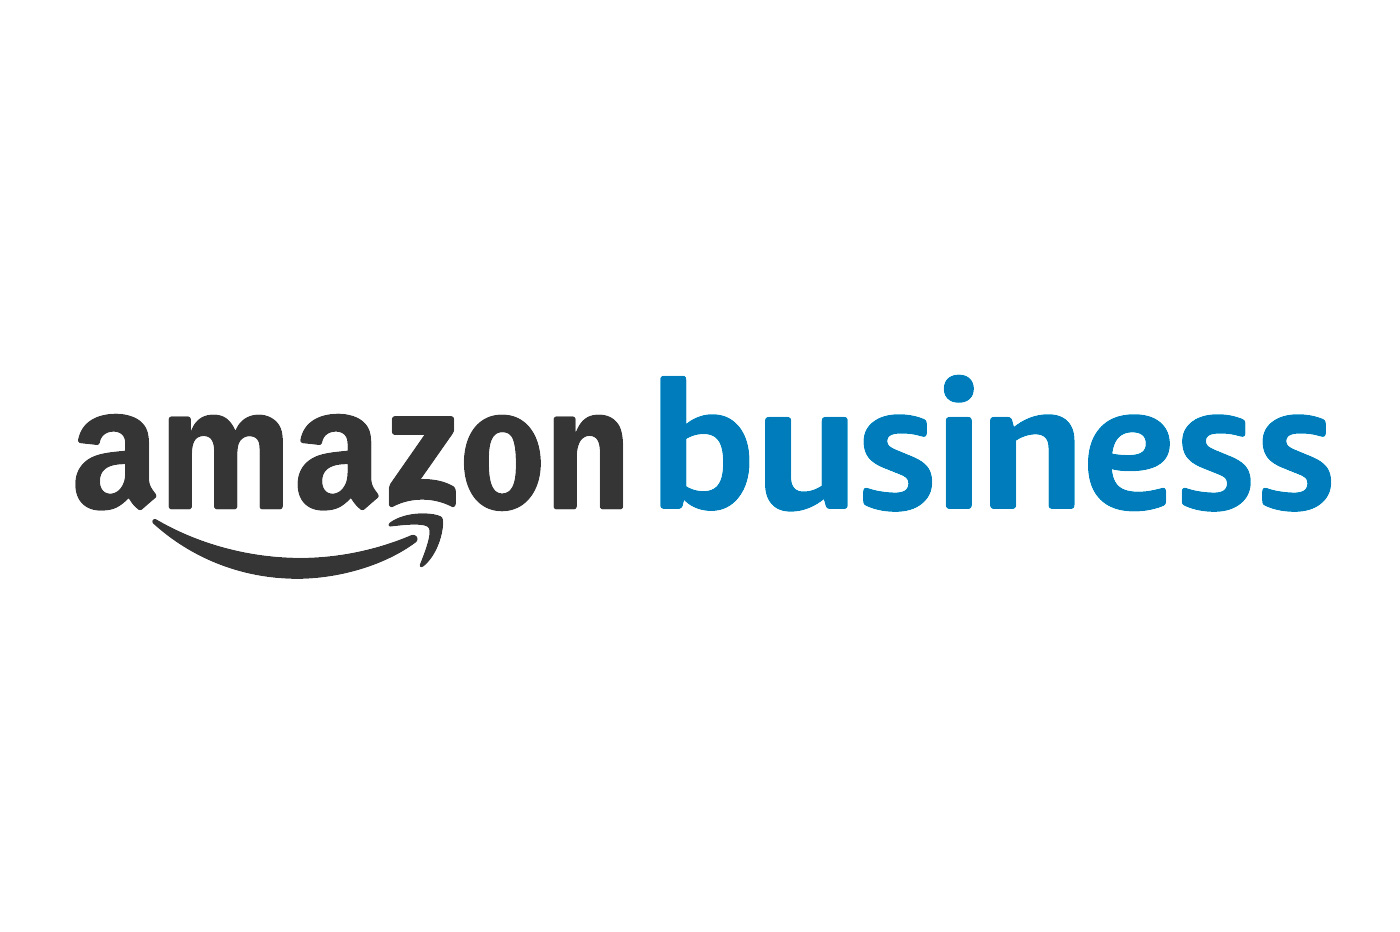 Amazon-Business-Avis-Test-1.jpg